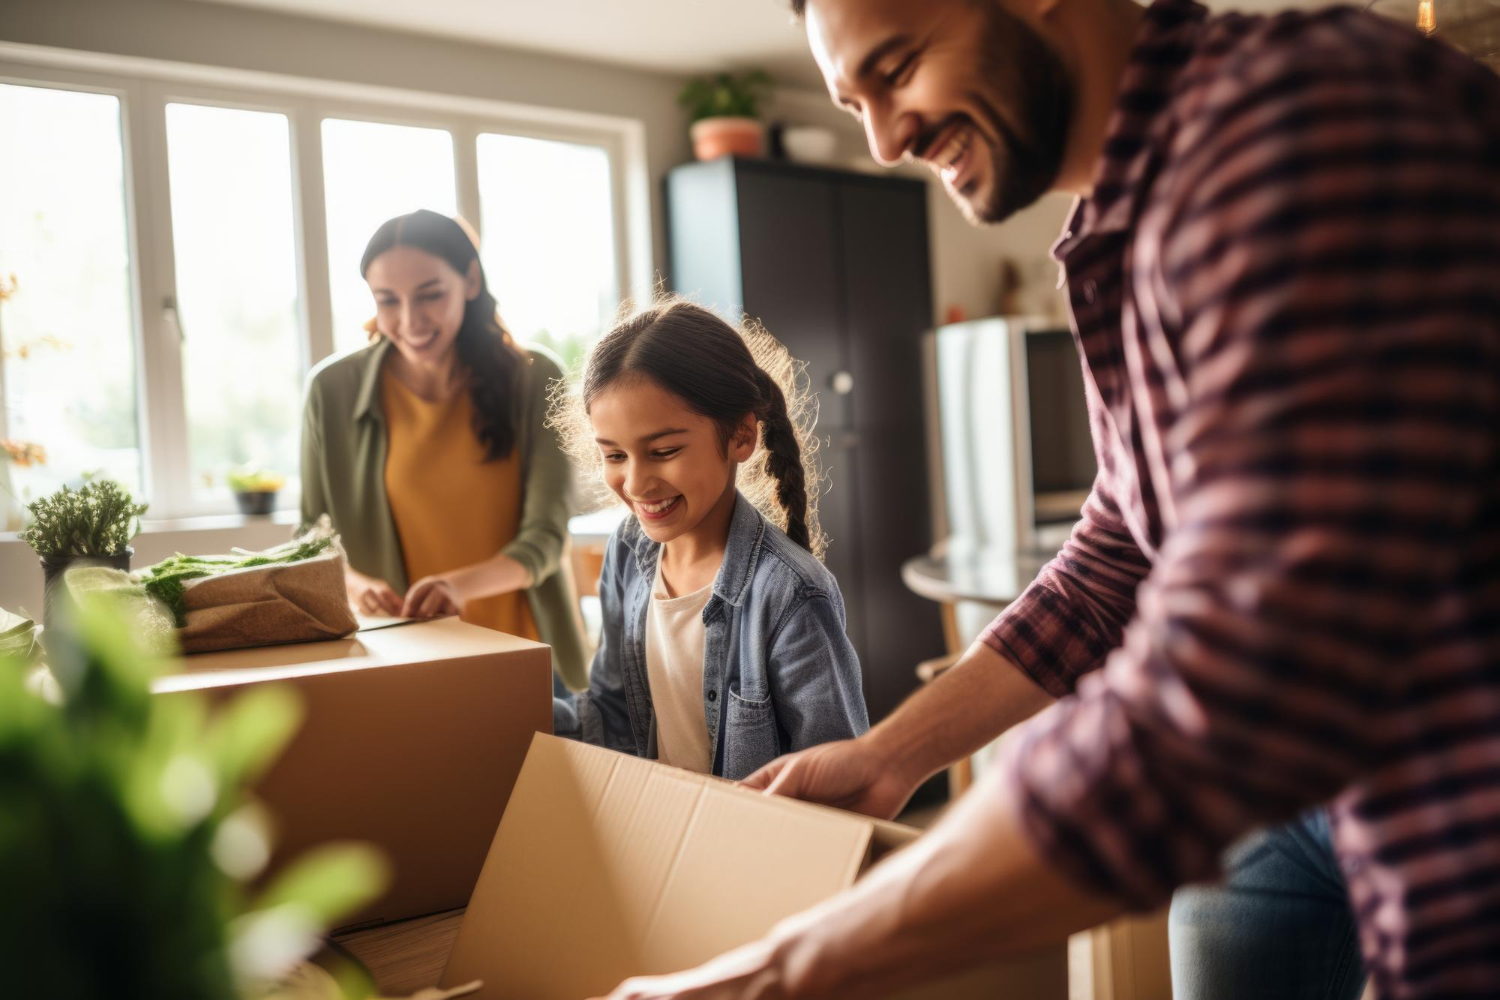 "Une famille souriante portant des cartons pour déménager vers leur nouvelle maison, image illustrant une situation de garde alternée après déménagement."